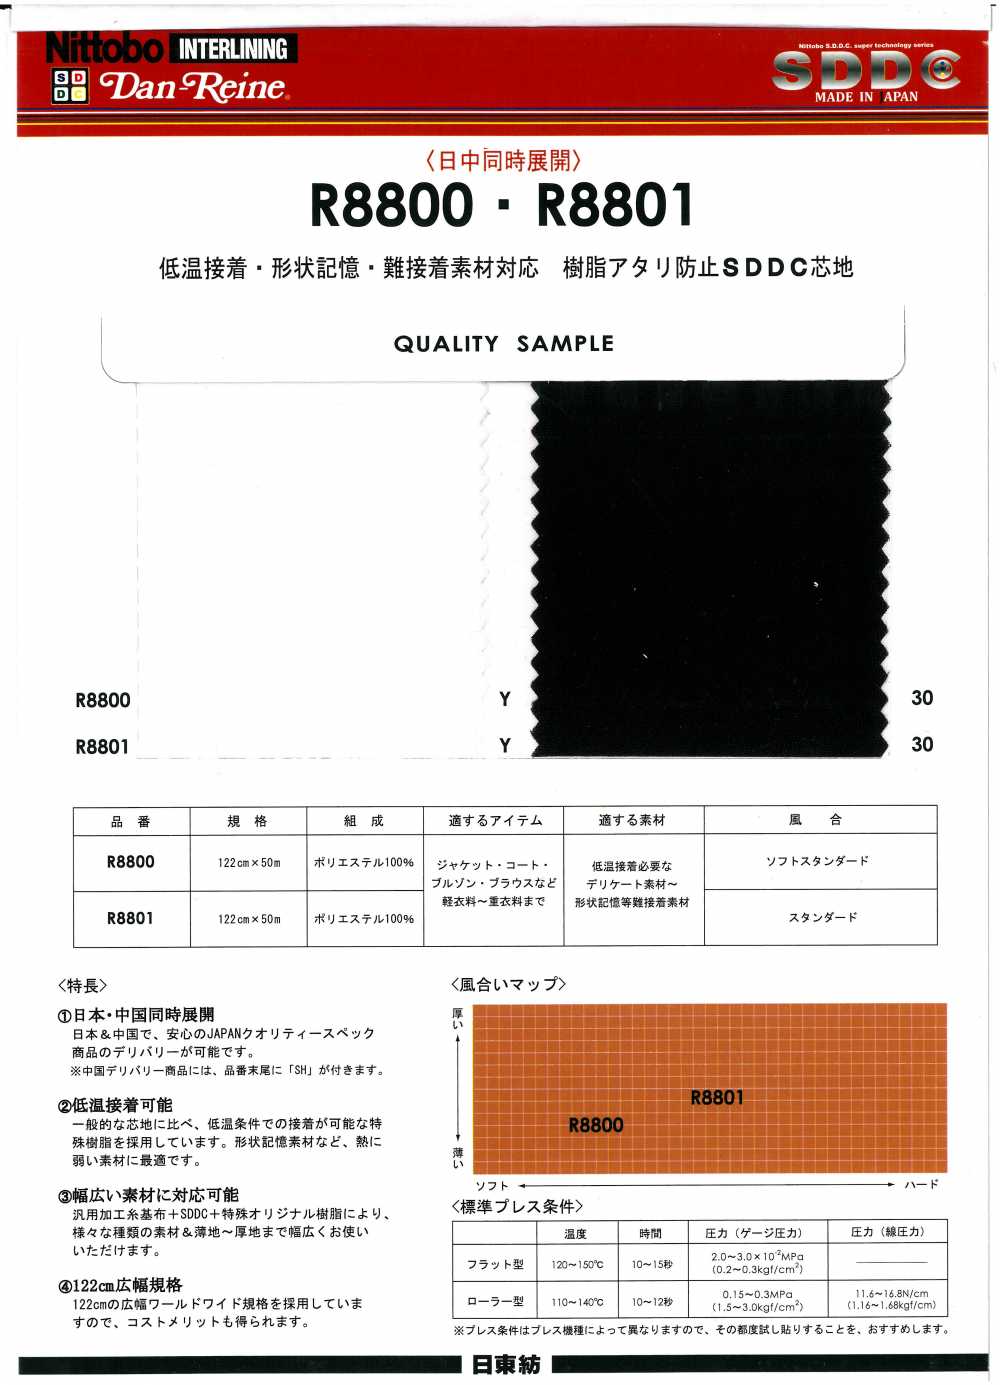 R8801 兼容低溫粘著、形狀記憶和難粘材料樹脂襯，防止雅化[襯布] 日東紡績